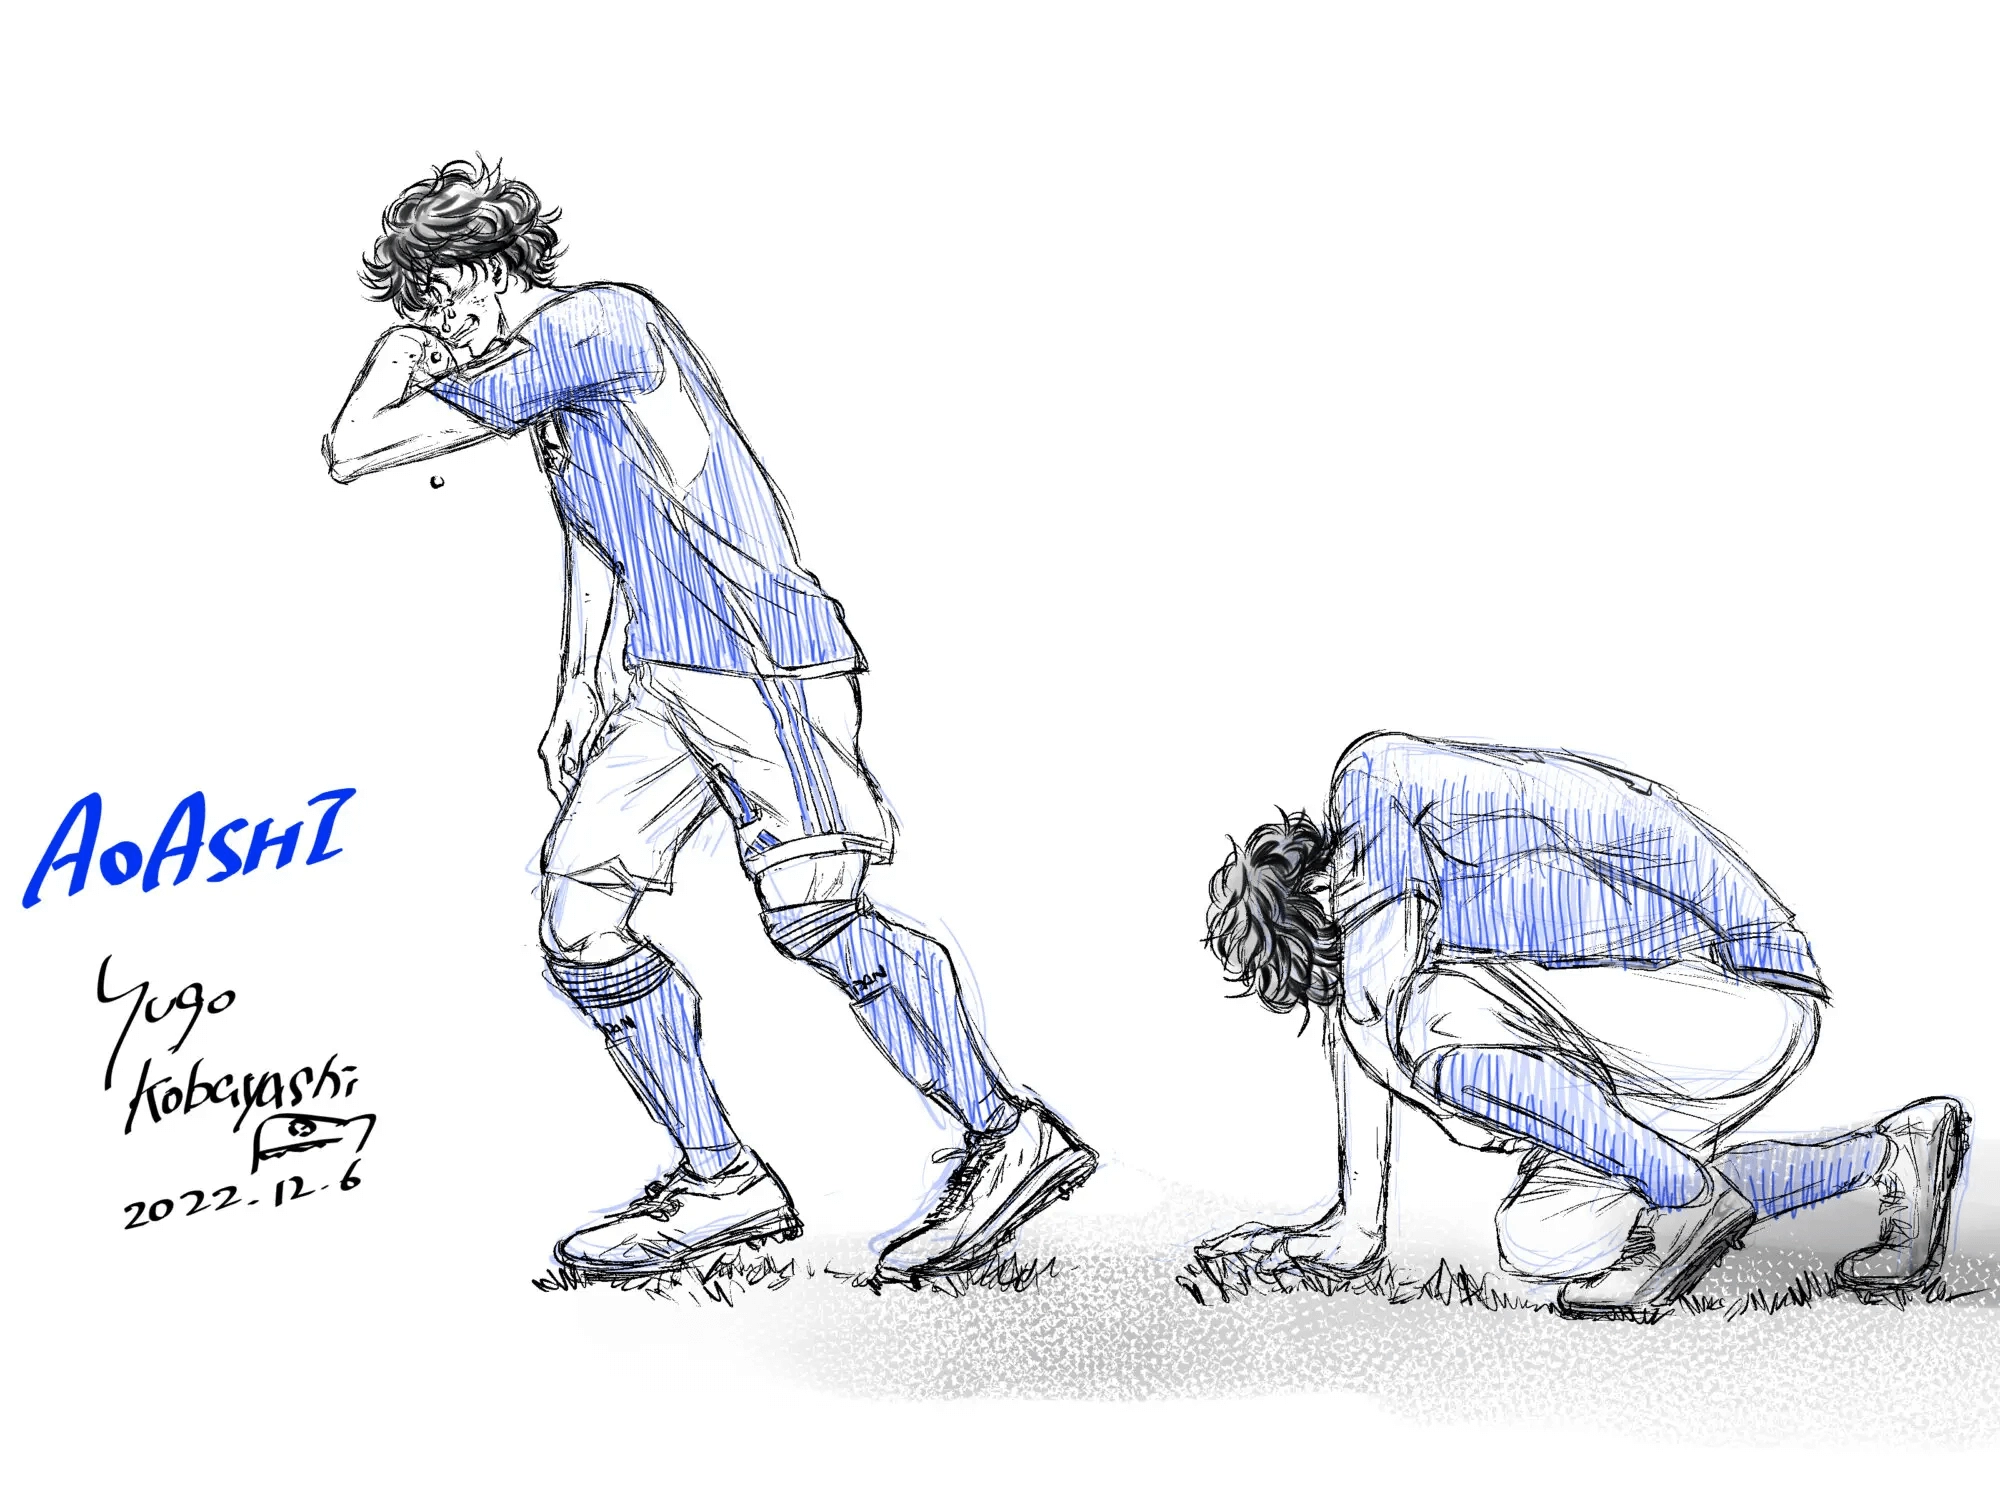 Homenaje de Ao Ashi a la Selección japonesa de fútbol